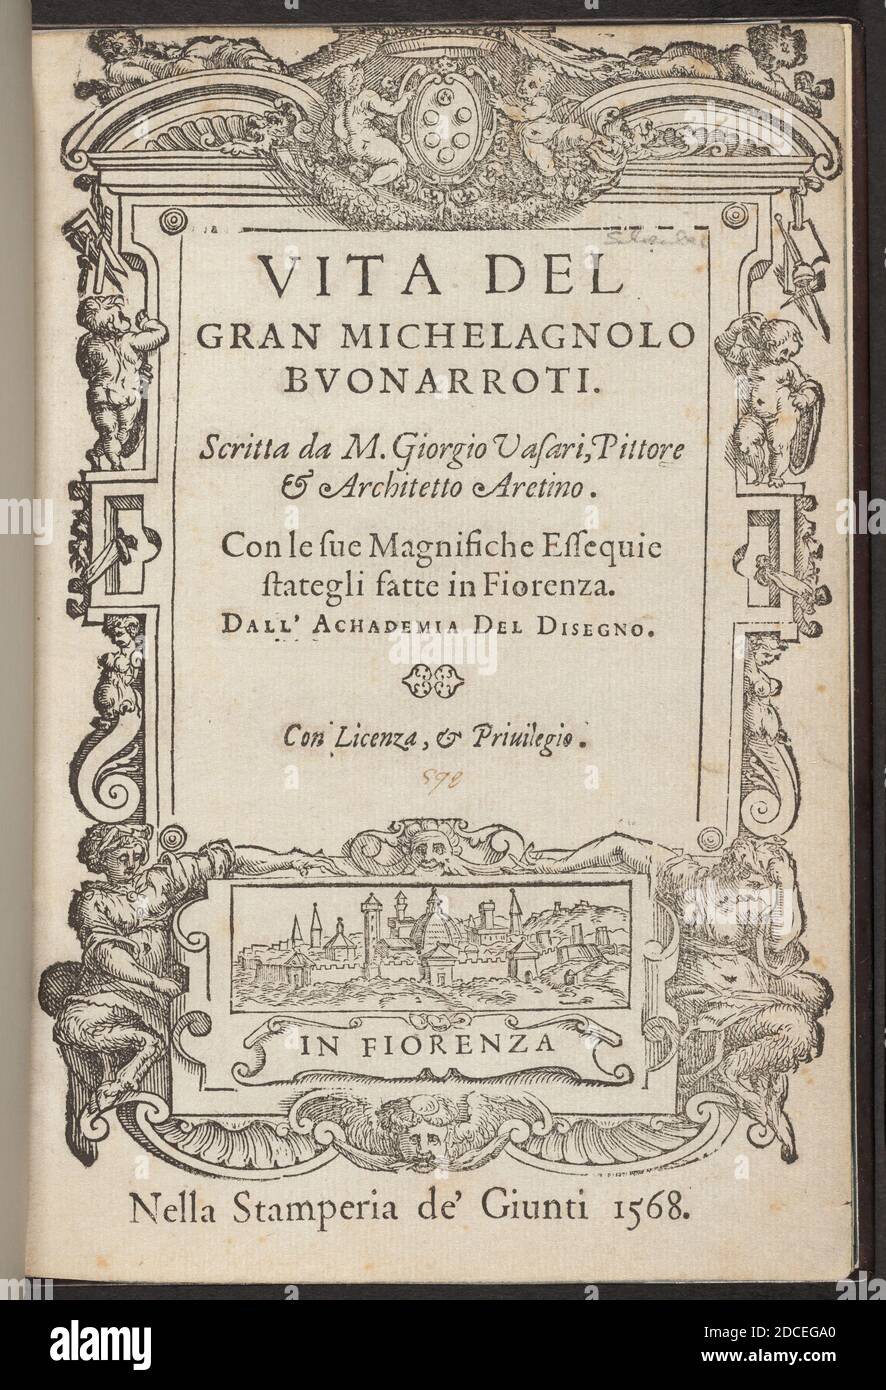 Giorgio Vasari, (autore), Fiorentino, 1511 - 1574, vita de' gran Michelagnolo Buonarroti, pubblicato il 1568, 1 vol: Ill: Illustrazioni in legno, dimensioni pagina: 21.1 x 14.3 cm (8 5/16 x 5 5/8 pollici Foto Stock